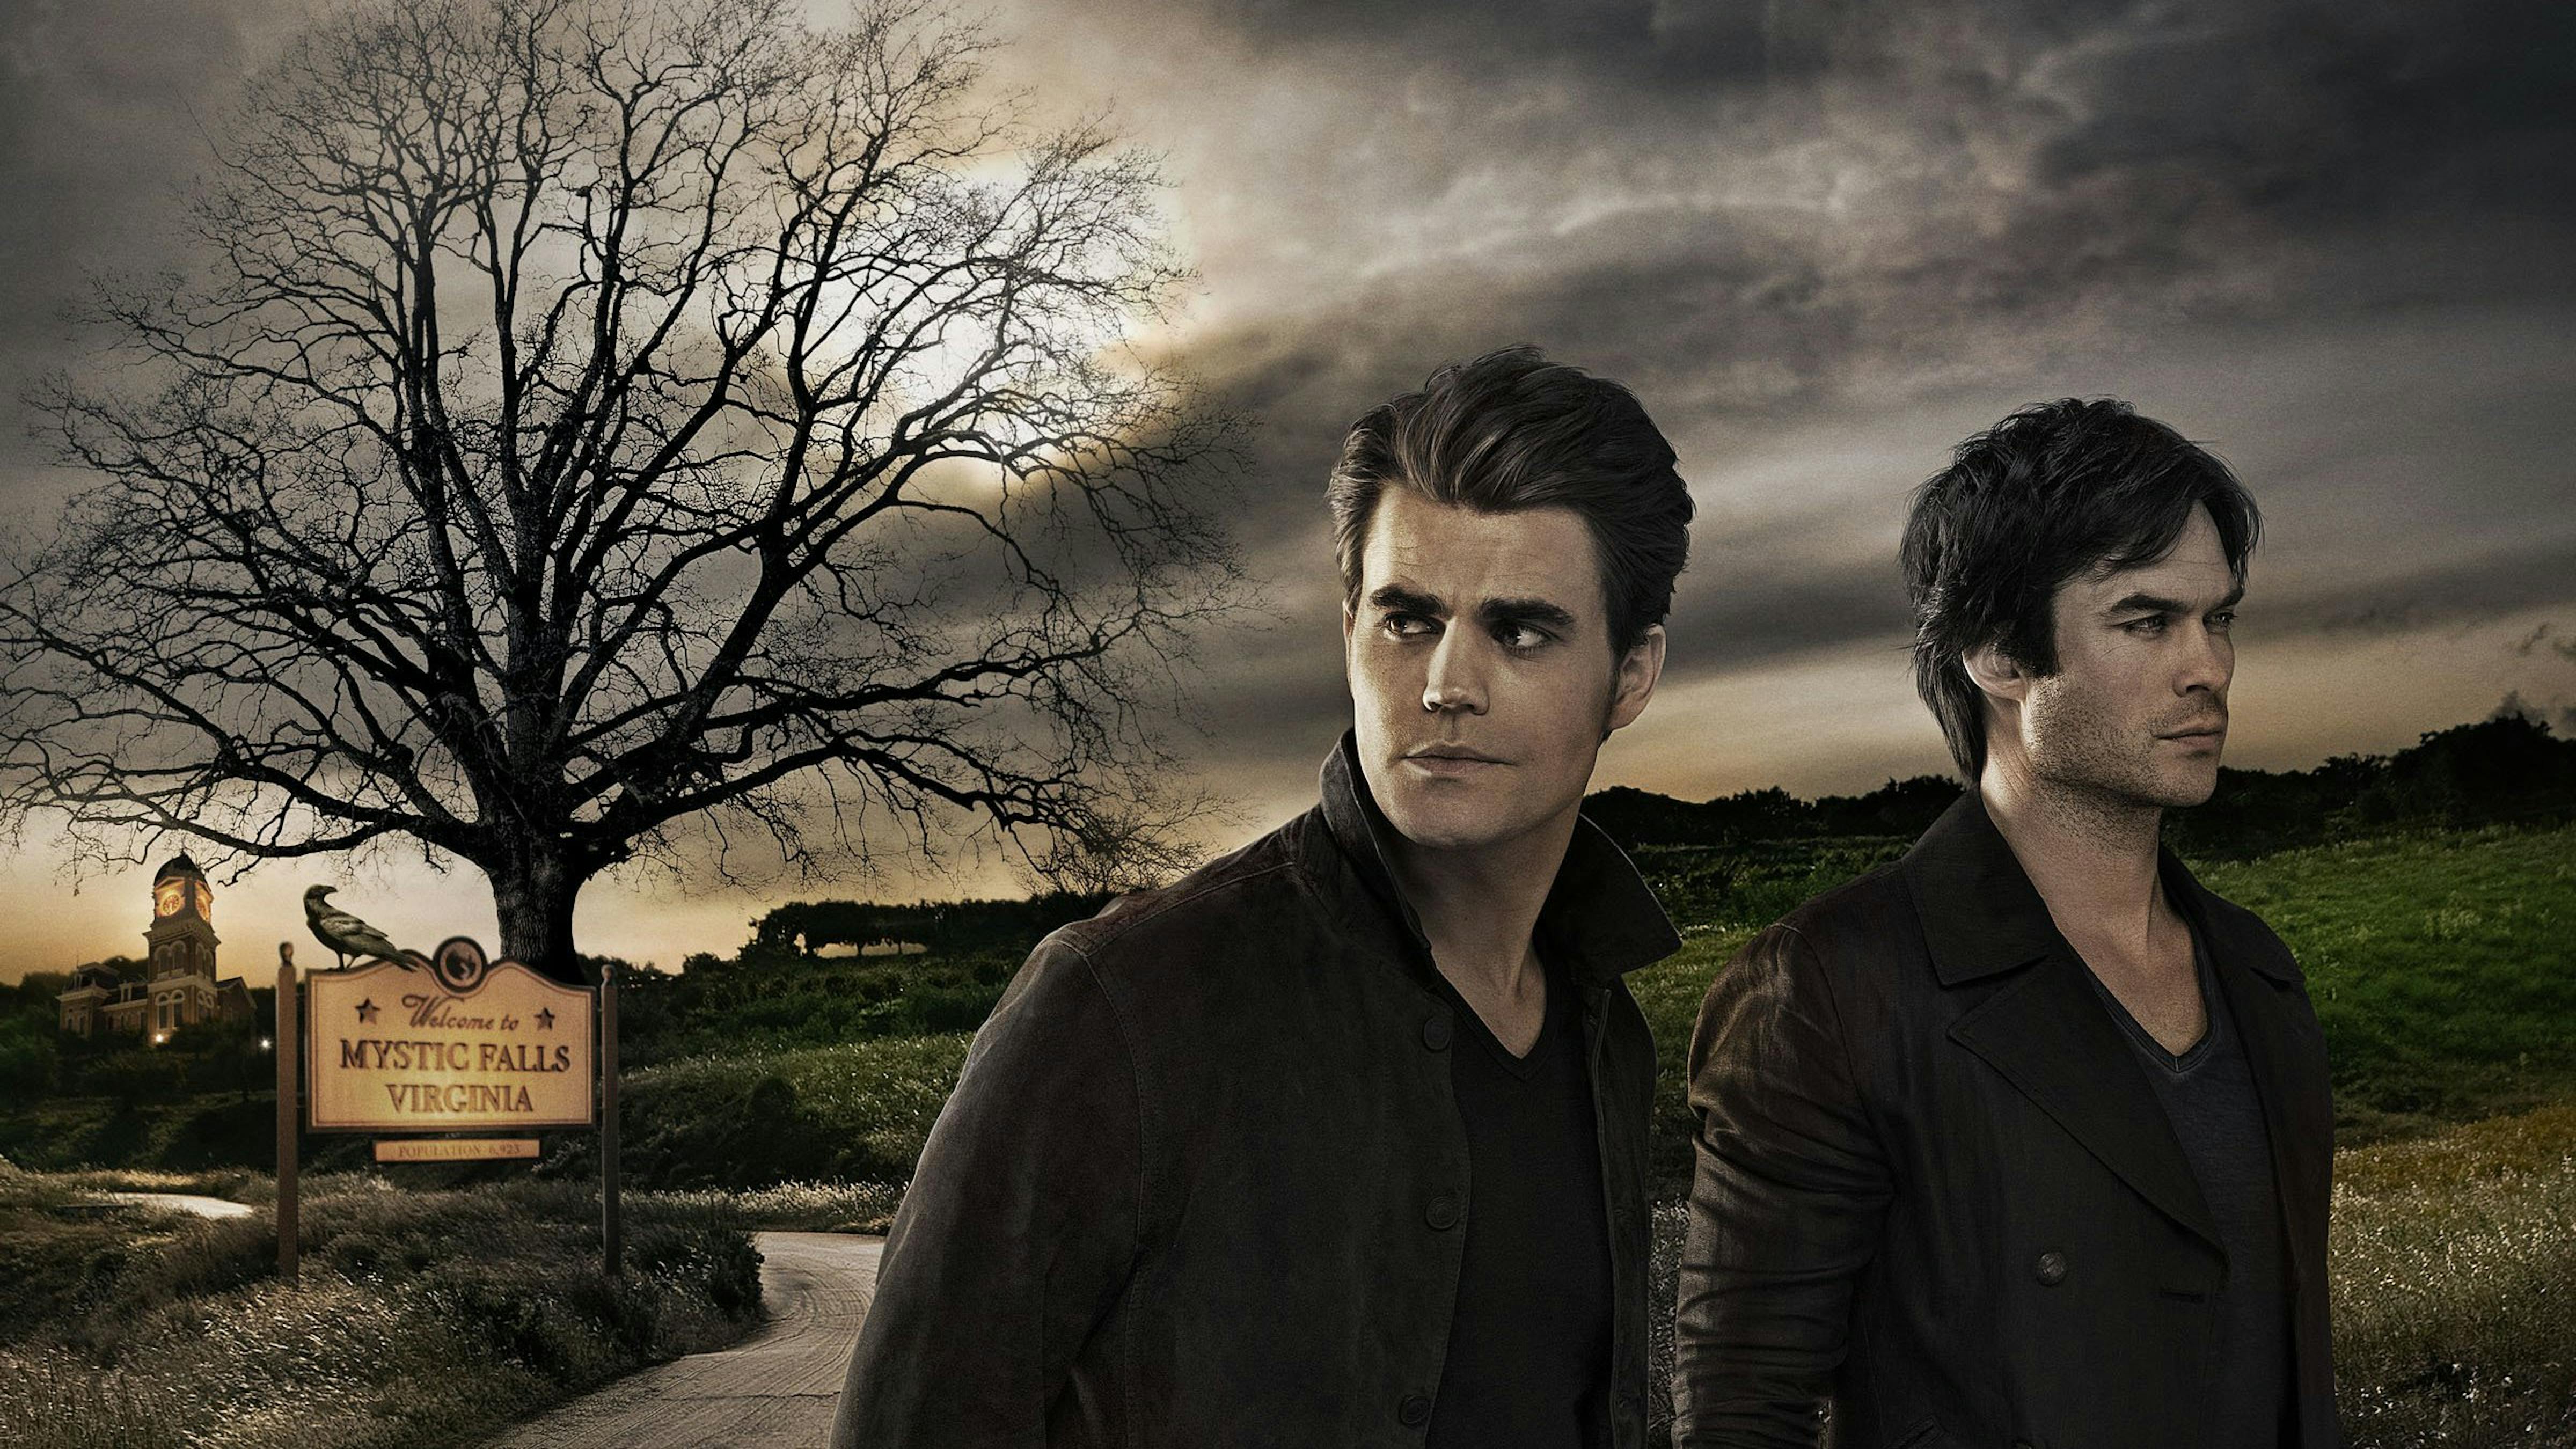 As músicas mais lindas da trilha sonora de “The Vampire Diaries